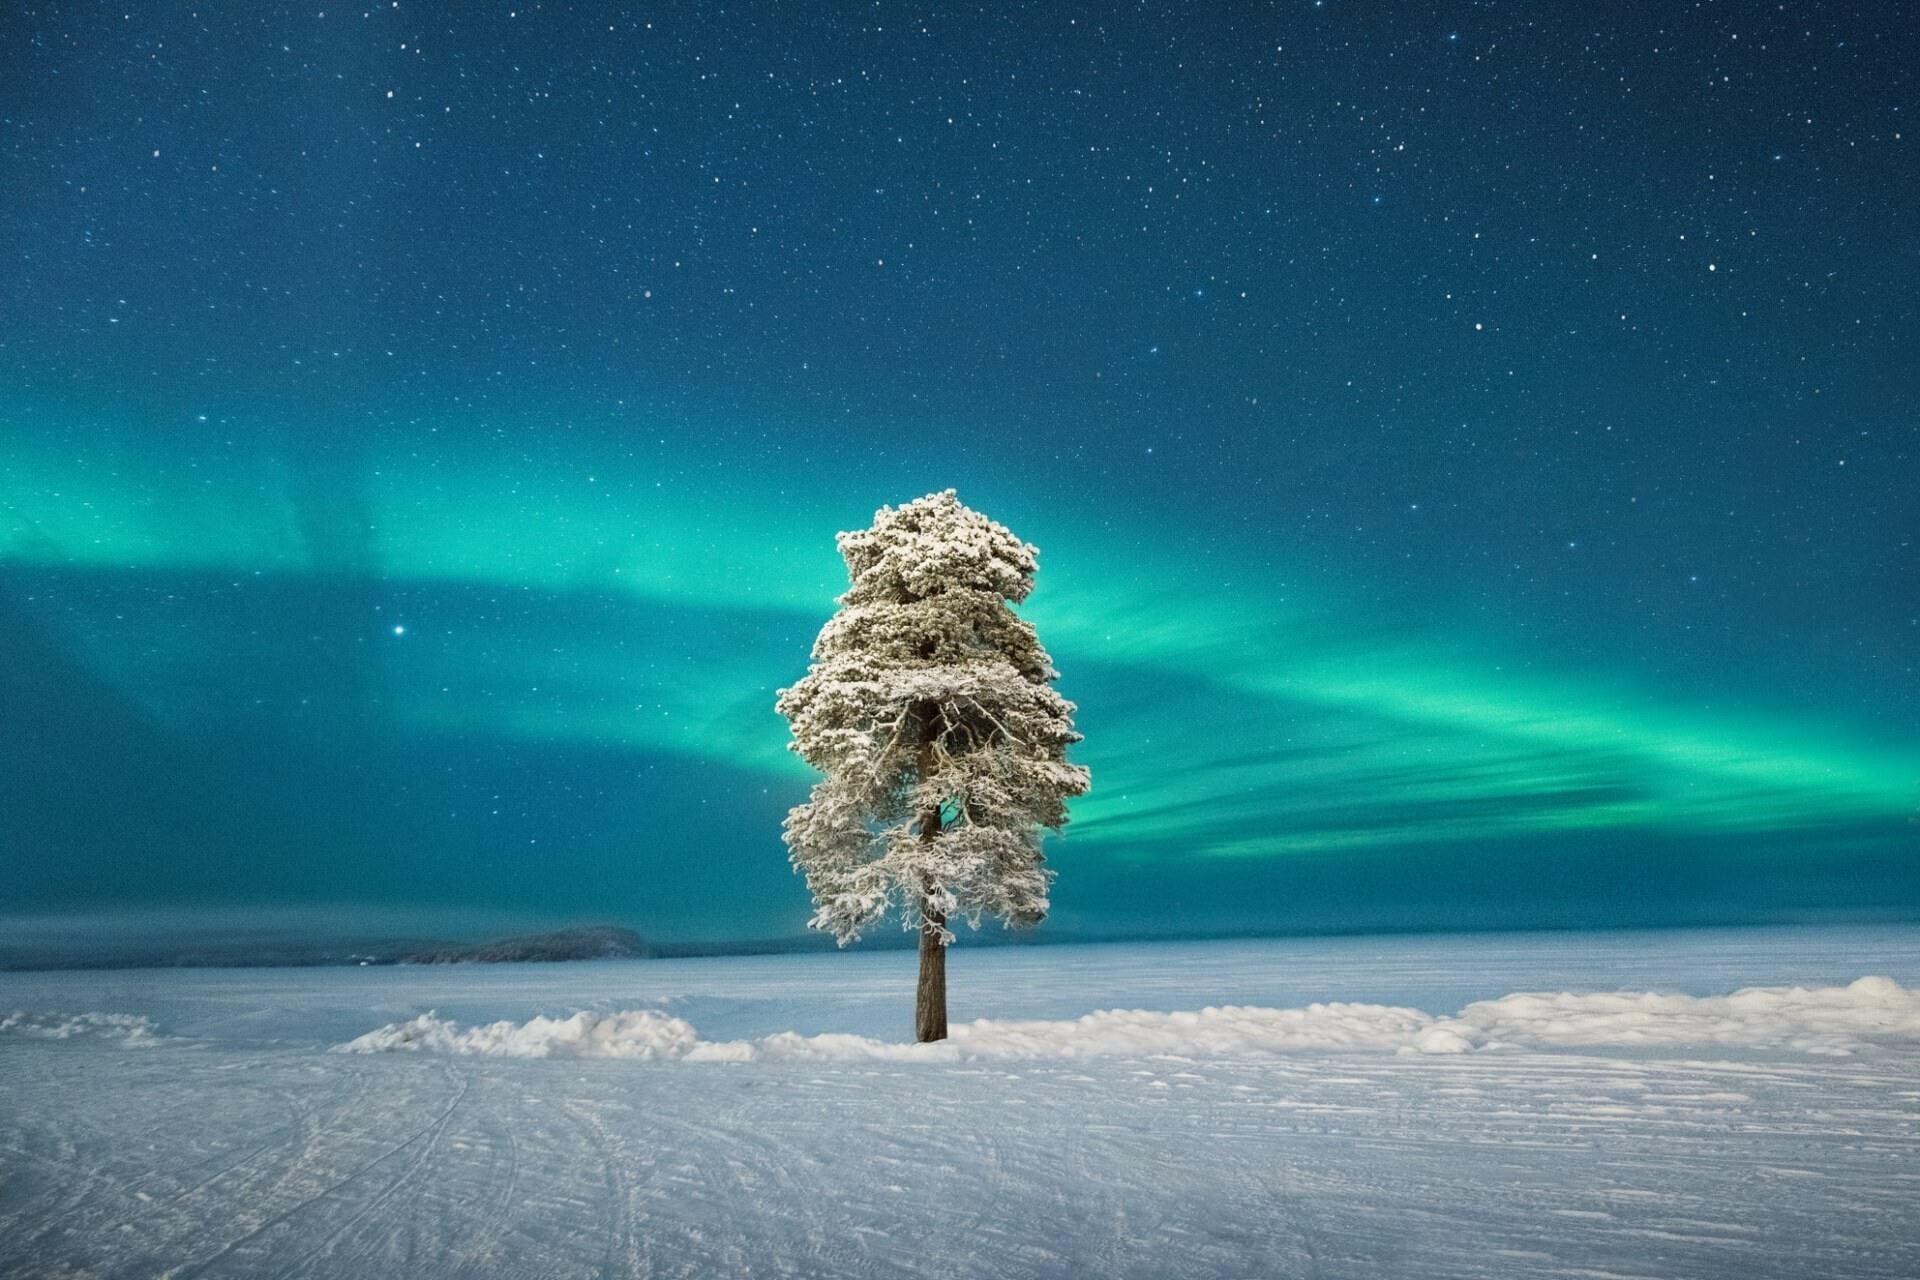 Одинокое дерево под скандинавским северным сиянием. Автор - Том Арчер, Великобритания. Второе место в категории "Полярное сияние"